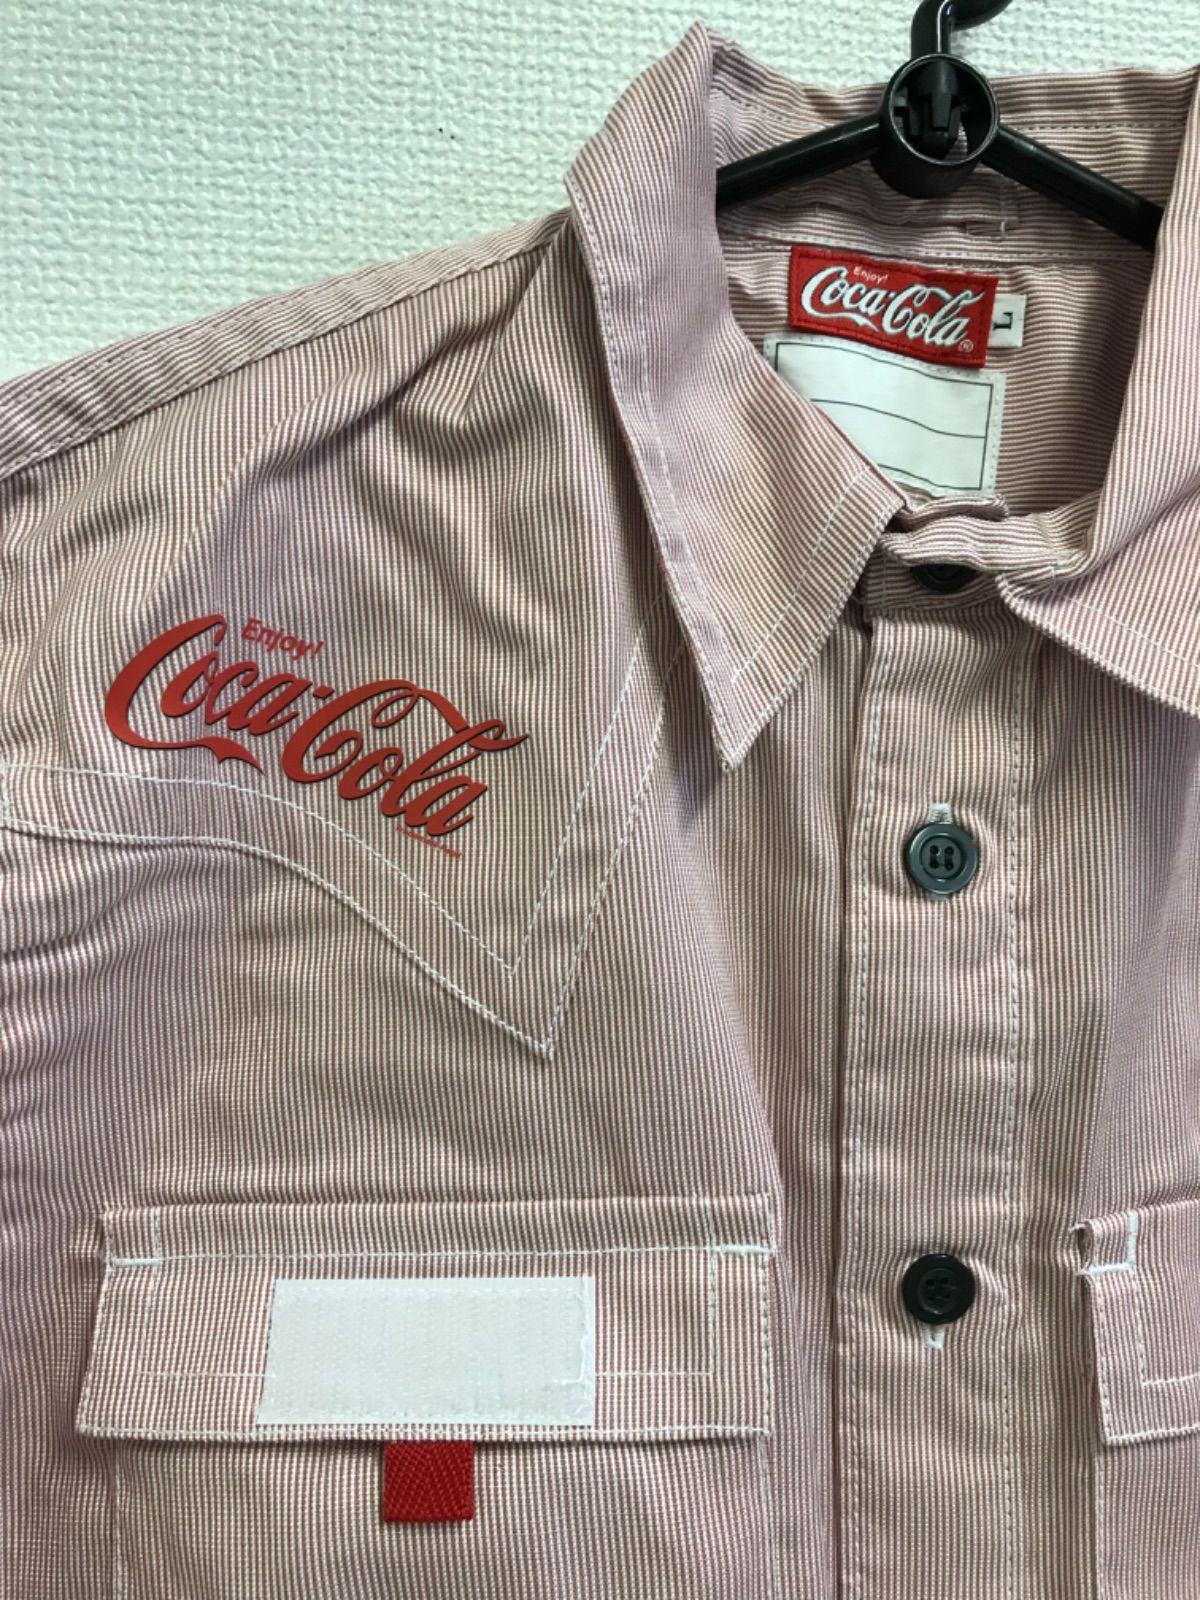 コカコーラ 半袖 制服 サイズ中 - シャツ